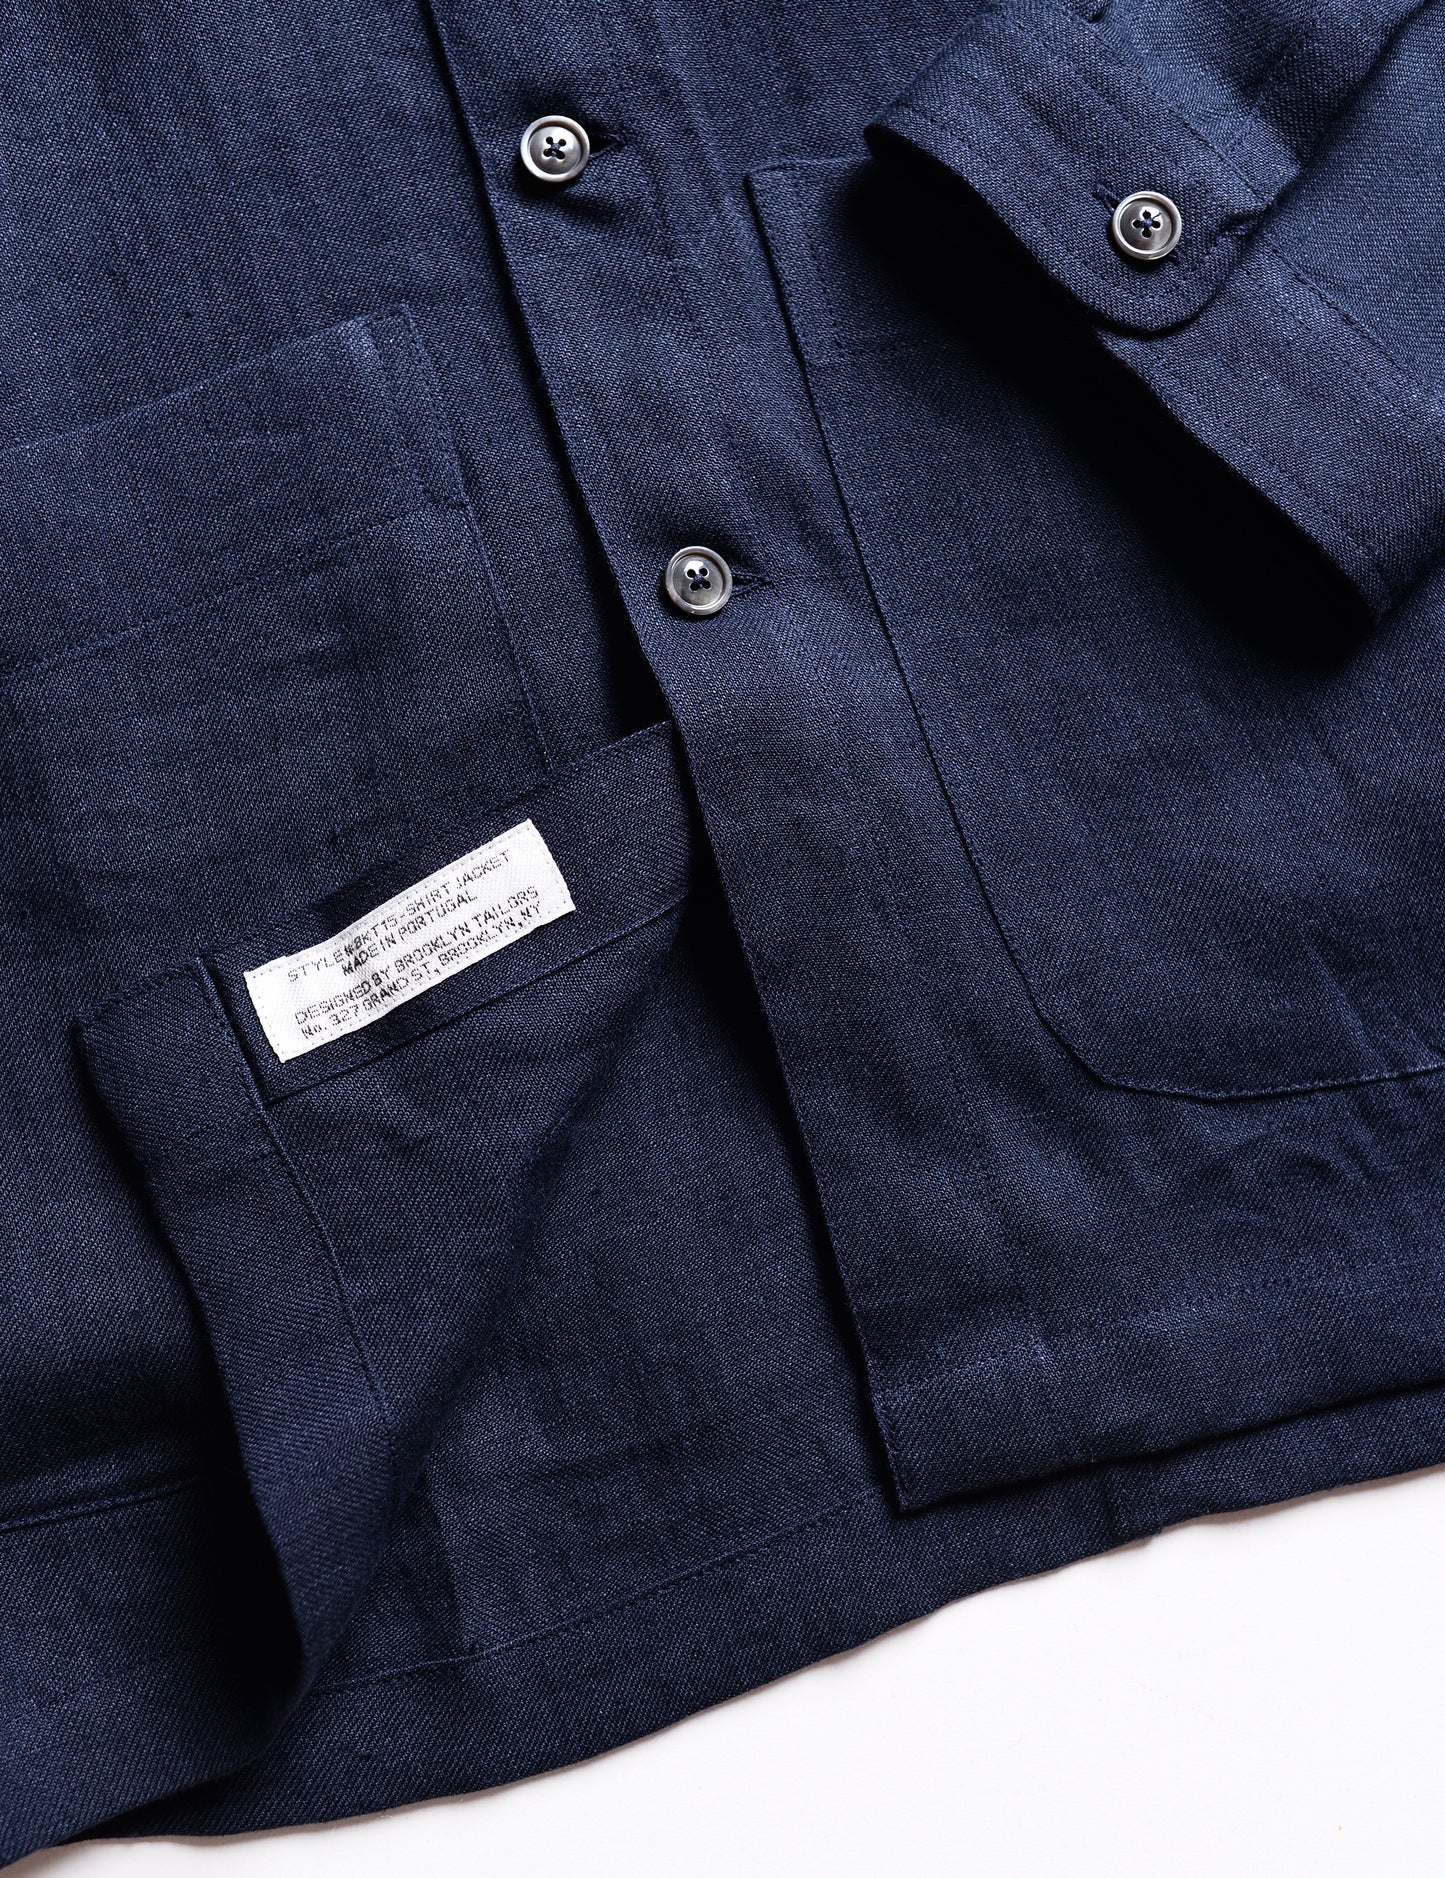 BKT15 Shirt Jacket in Linen Twill - Salerno Blue